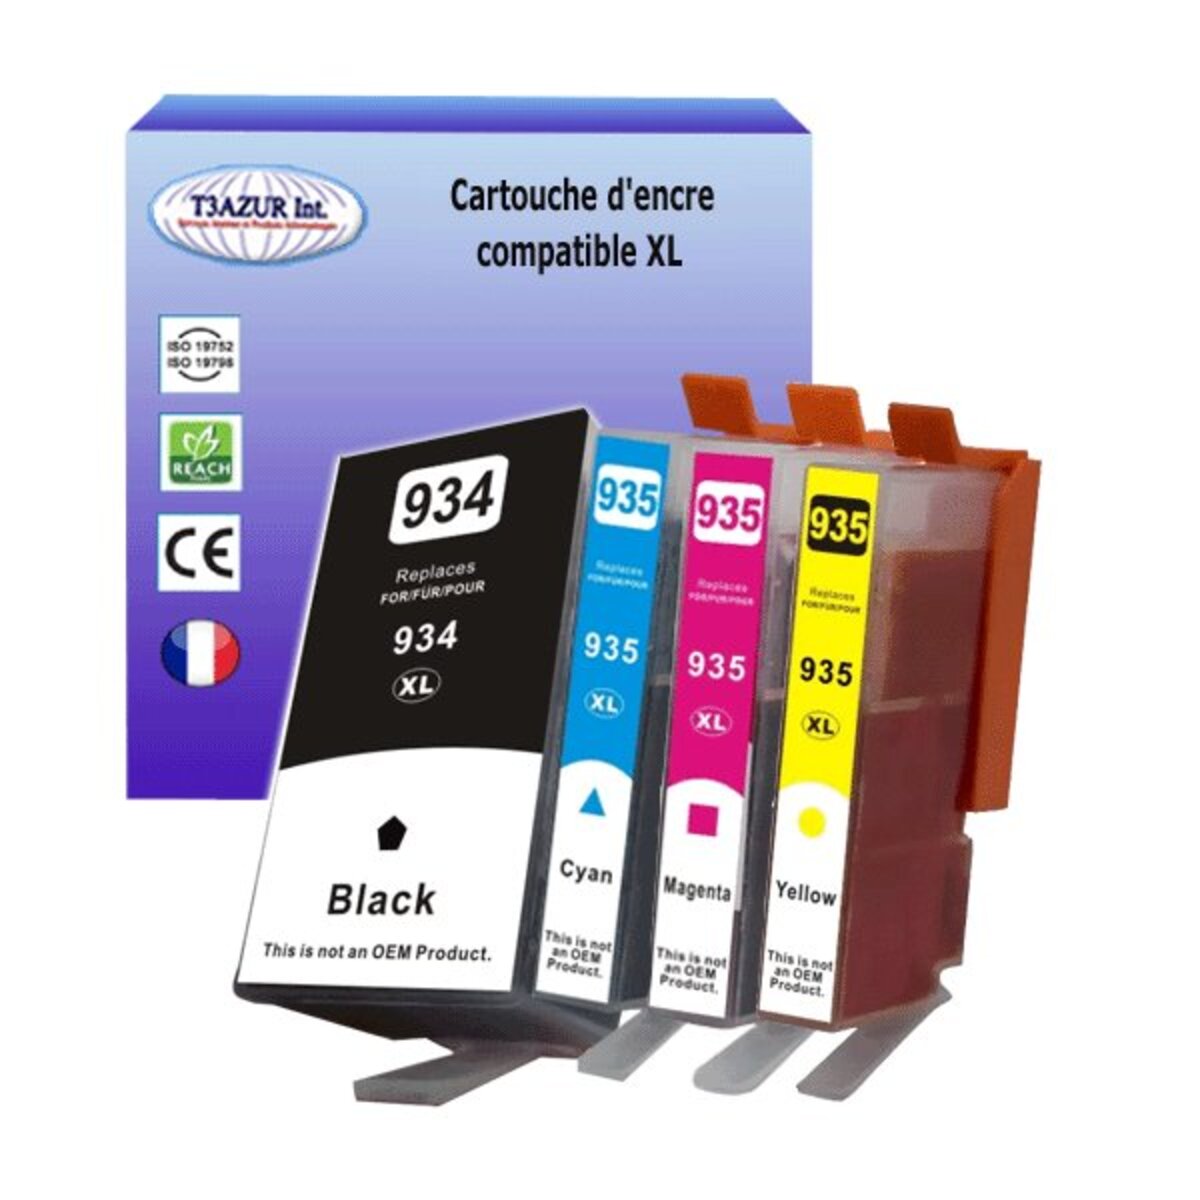 8 Cartouches compatibles avec HP OfficeJet Pro 6230 ePrinter, 6820, 6830  remplace HP 934XL, HP 935XL (Noire+Couleur)- T3AZUR - La Poste